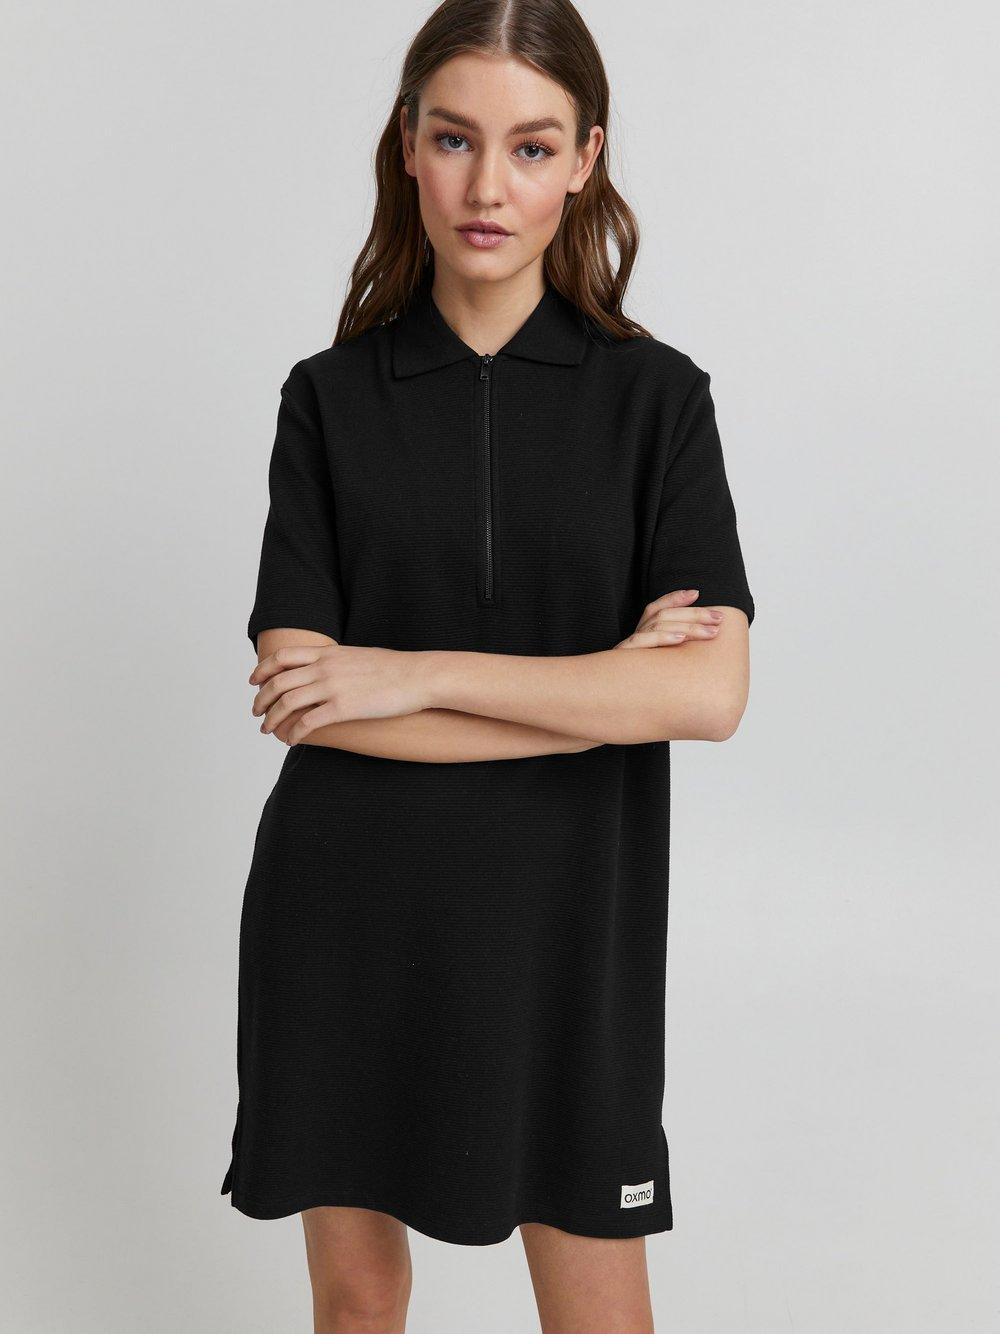 OXMO Blusenkleid Damen Baumwolle, schwarz von oxmo